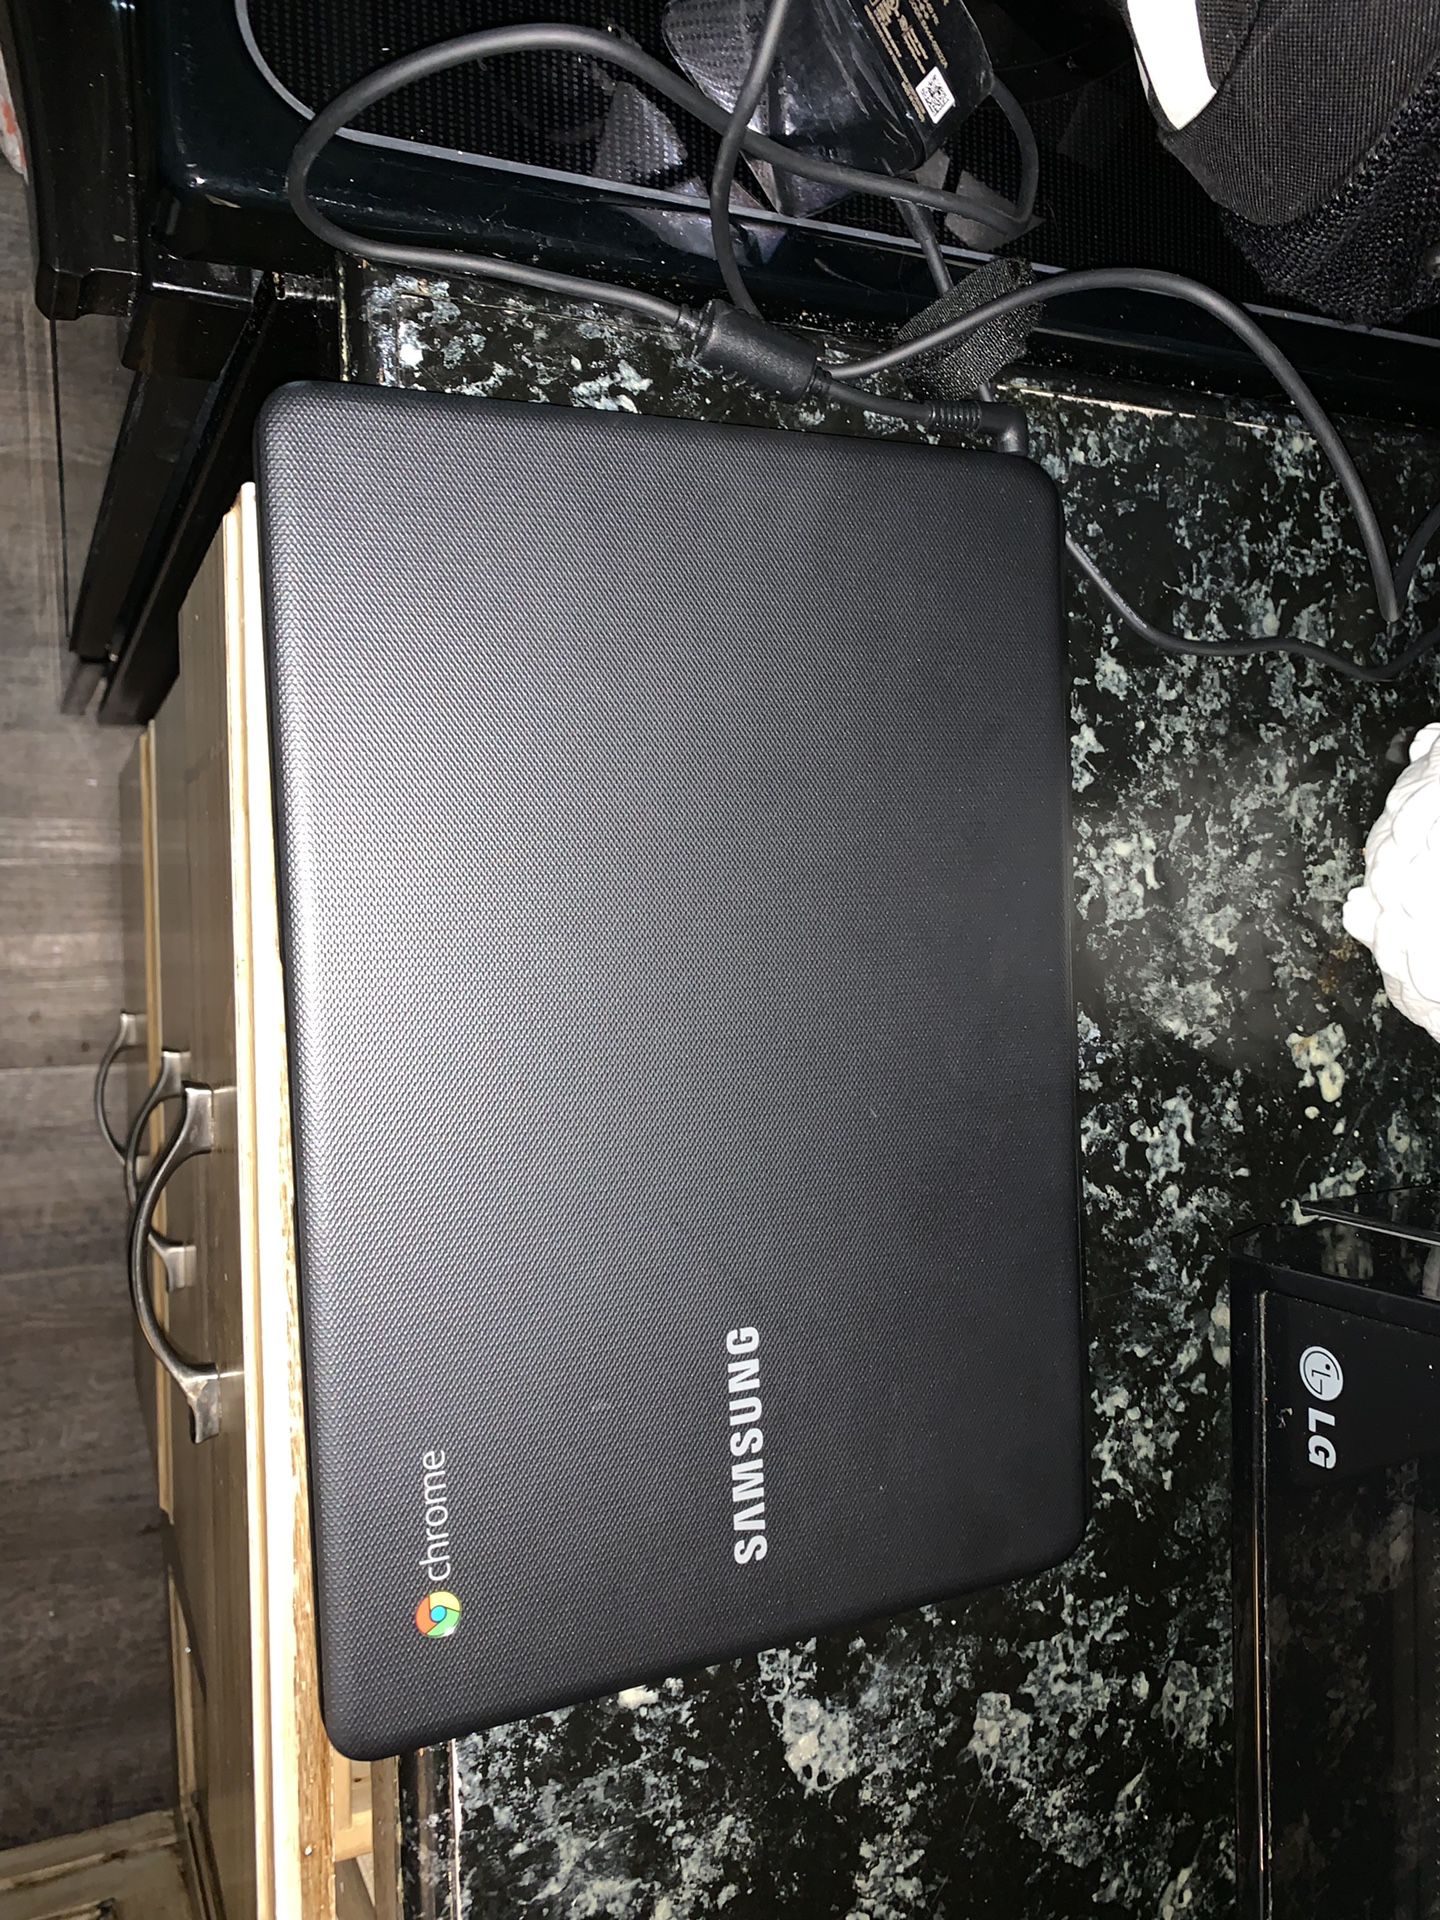 Samsung Chrome Notebook Model XE500C13. *Like New